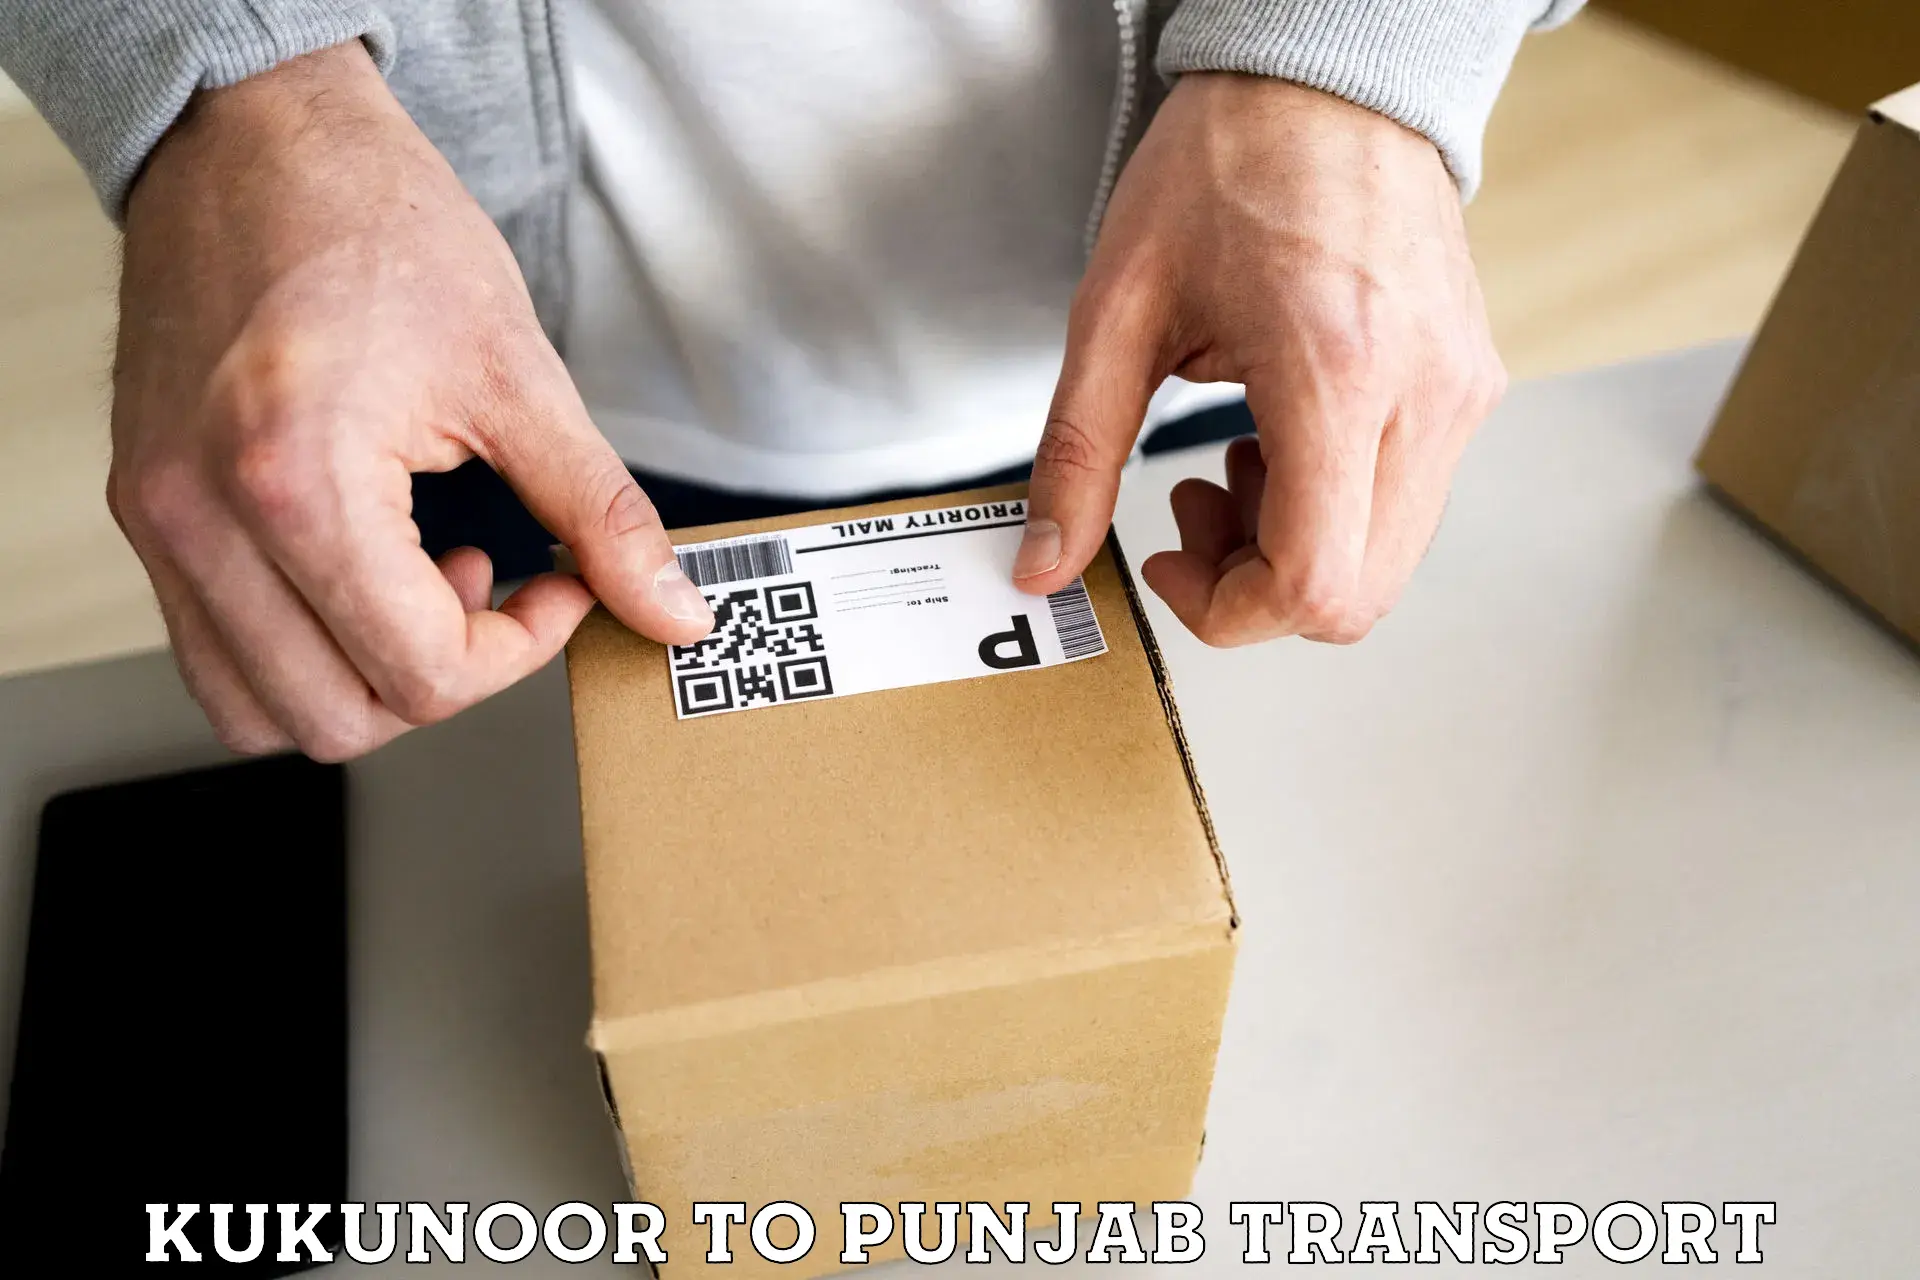 Furniture transport service Kukunoor to Zirakpur